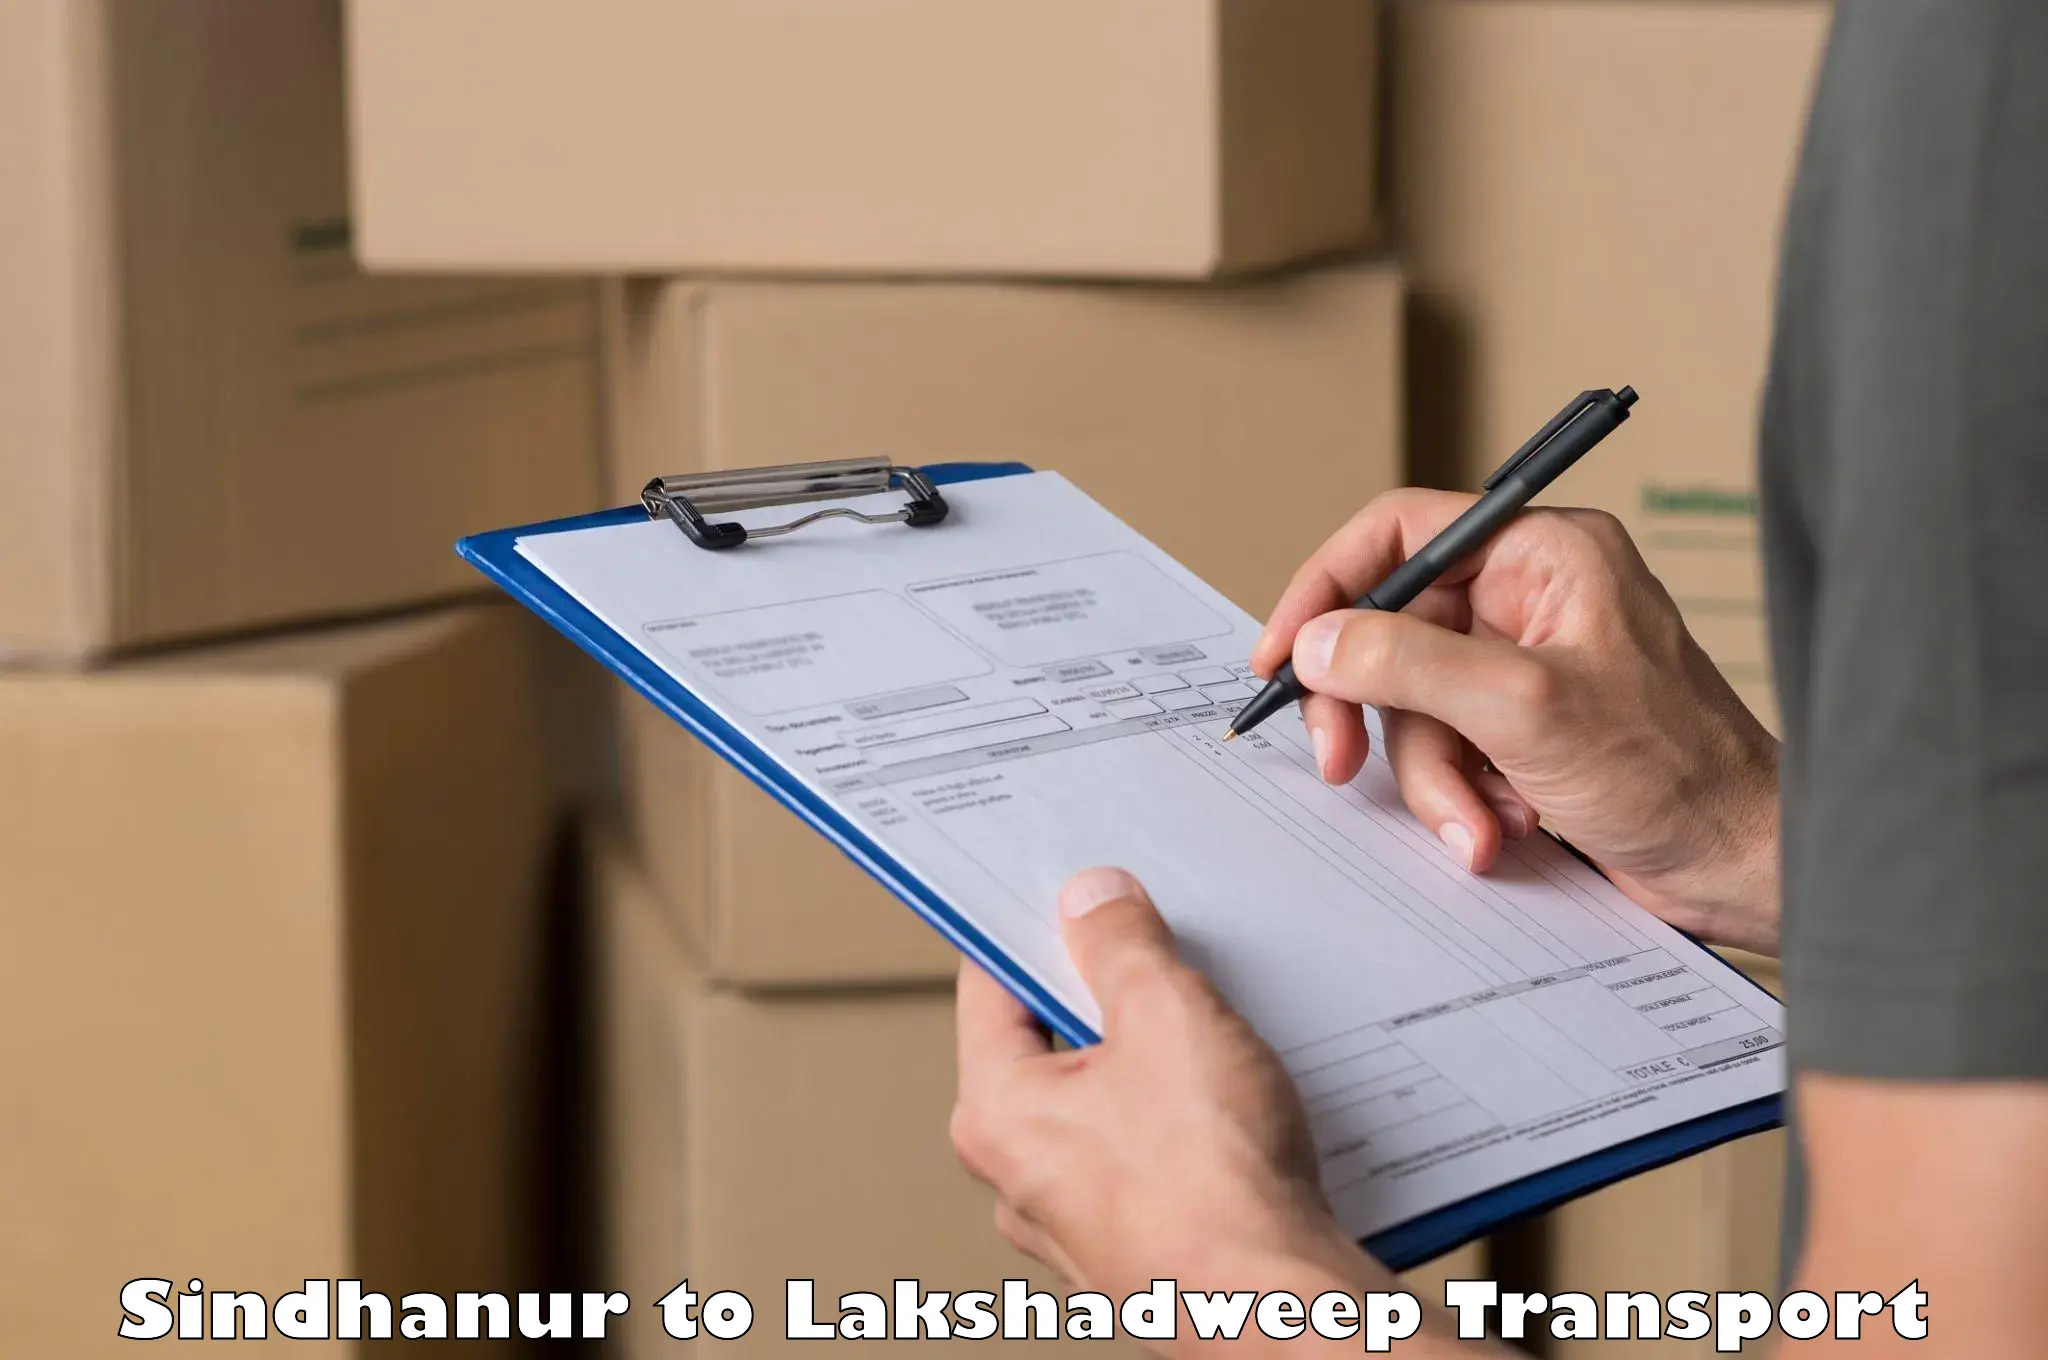 Express transport services Sindhanur to Lakshadweep